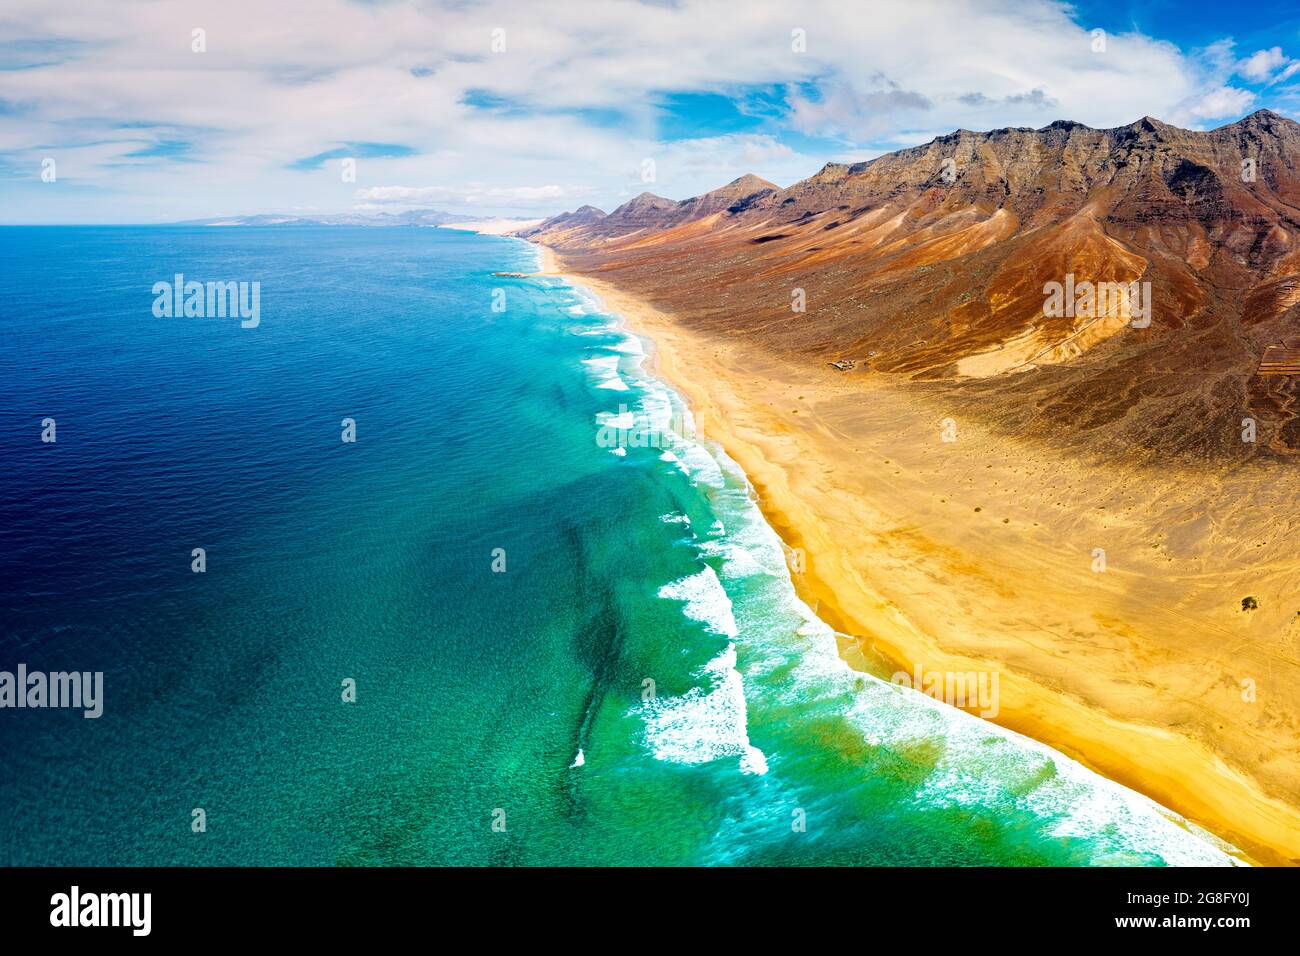 Vue panoramique aérienne des montagnes et de la plage de Cofete dans le parc naturel de Jandia, Fuerteventura, îles Canaries, Espagne, Atlantique, Europe Banque D'Images